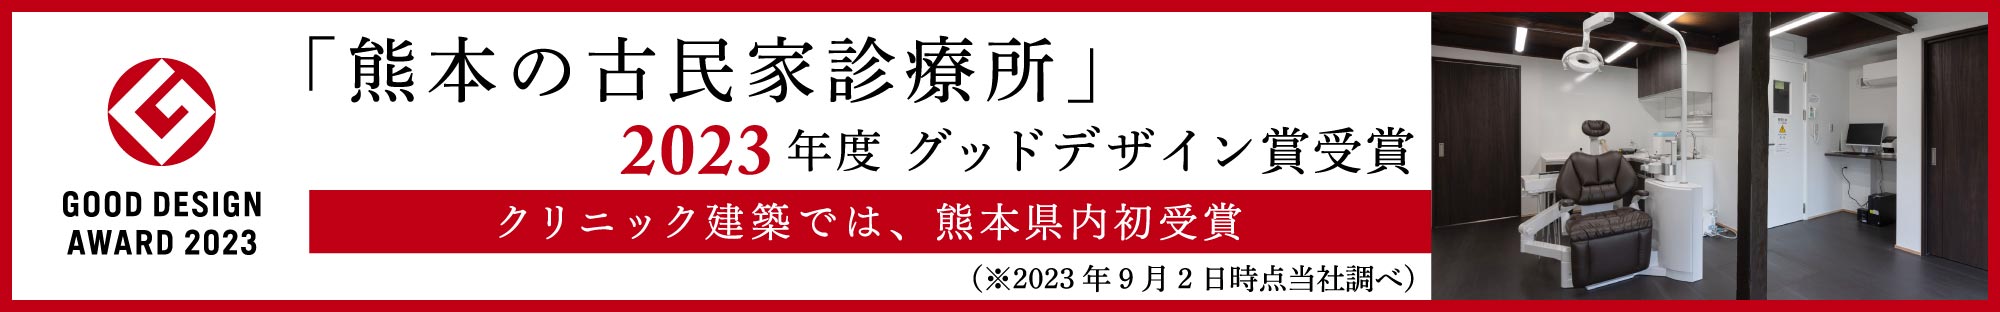 「熊本の古民家診療所」2023年度 グッドデザイン賞受賞。クリニック建築では、熊本県内初受賞（※2023年9月2日時点当社調べ）